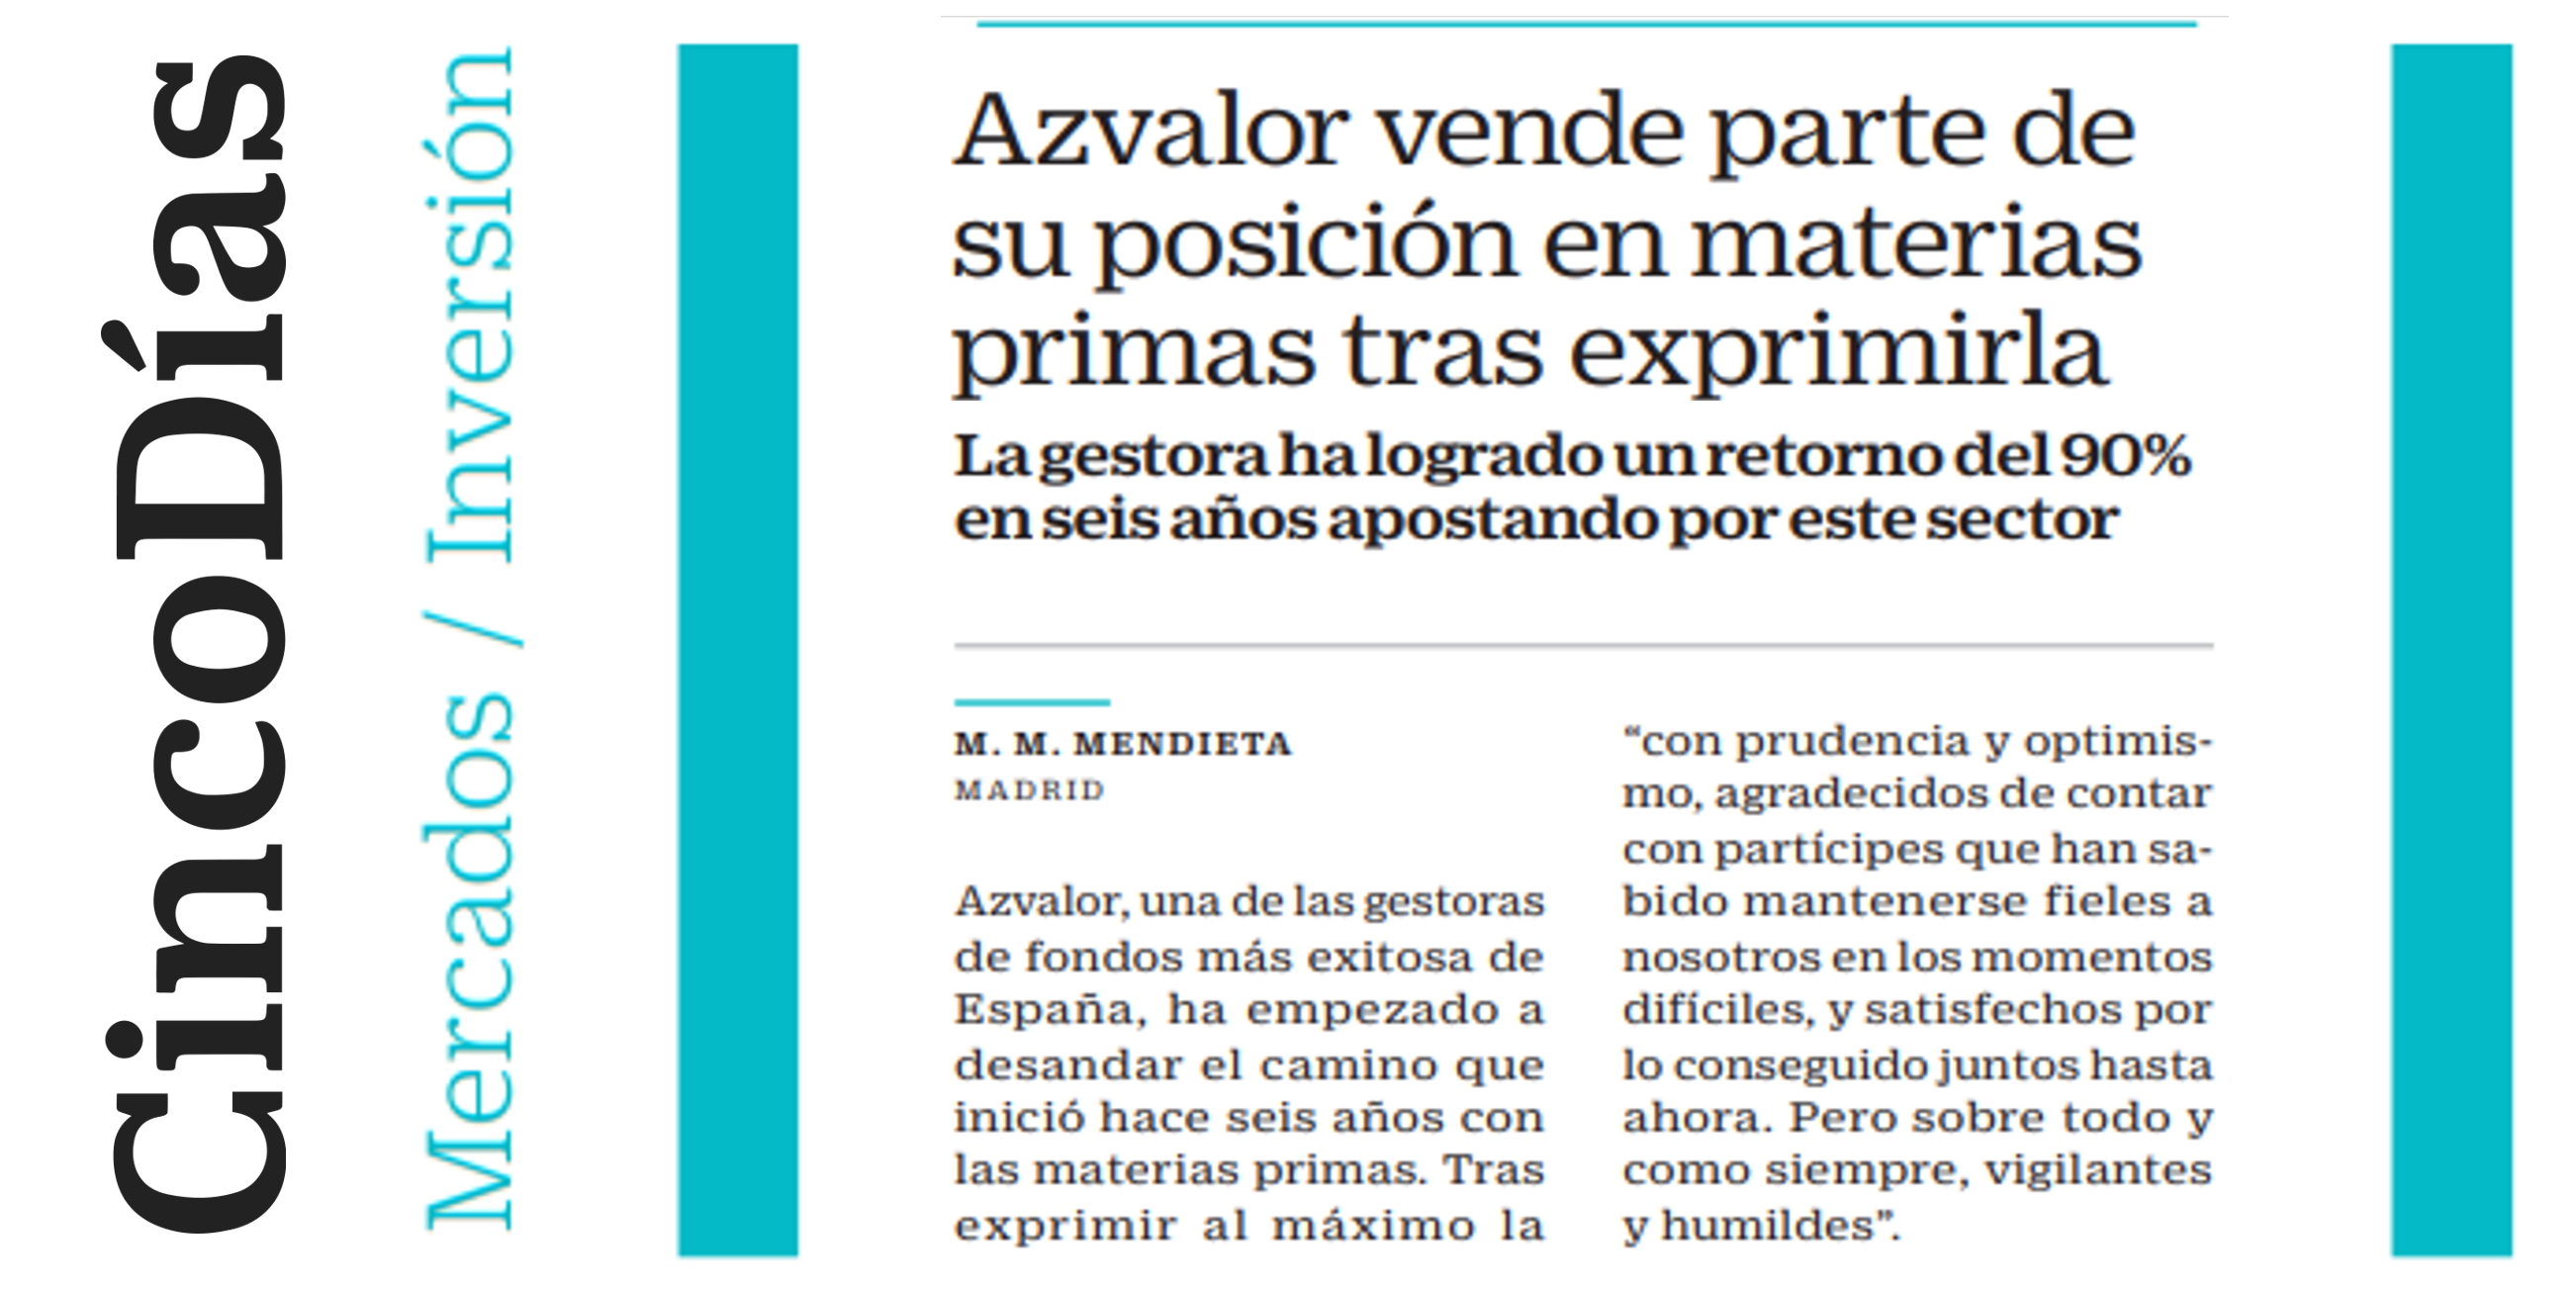 Azvalor vende parte de su posición en materias primas tras exprimirla | Cinco Días